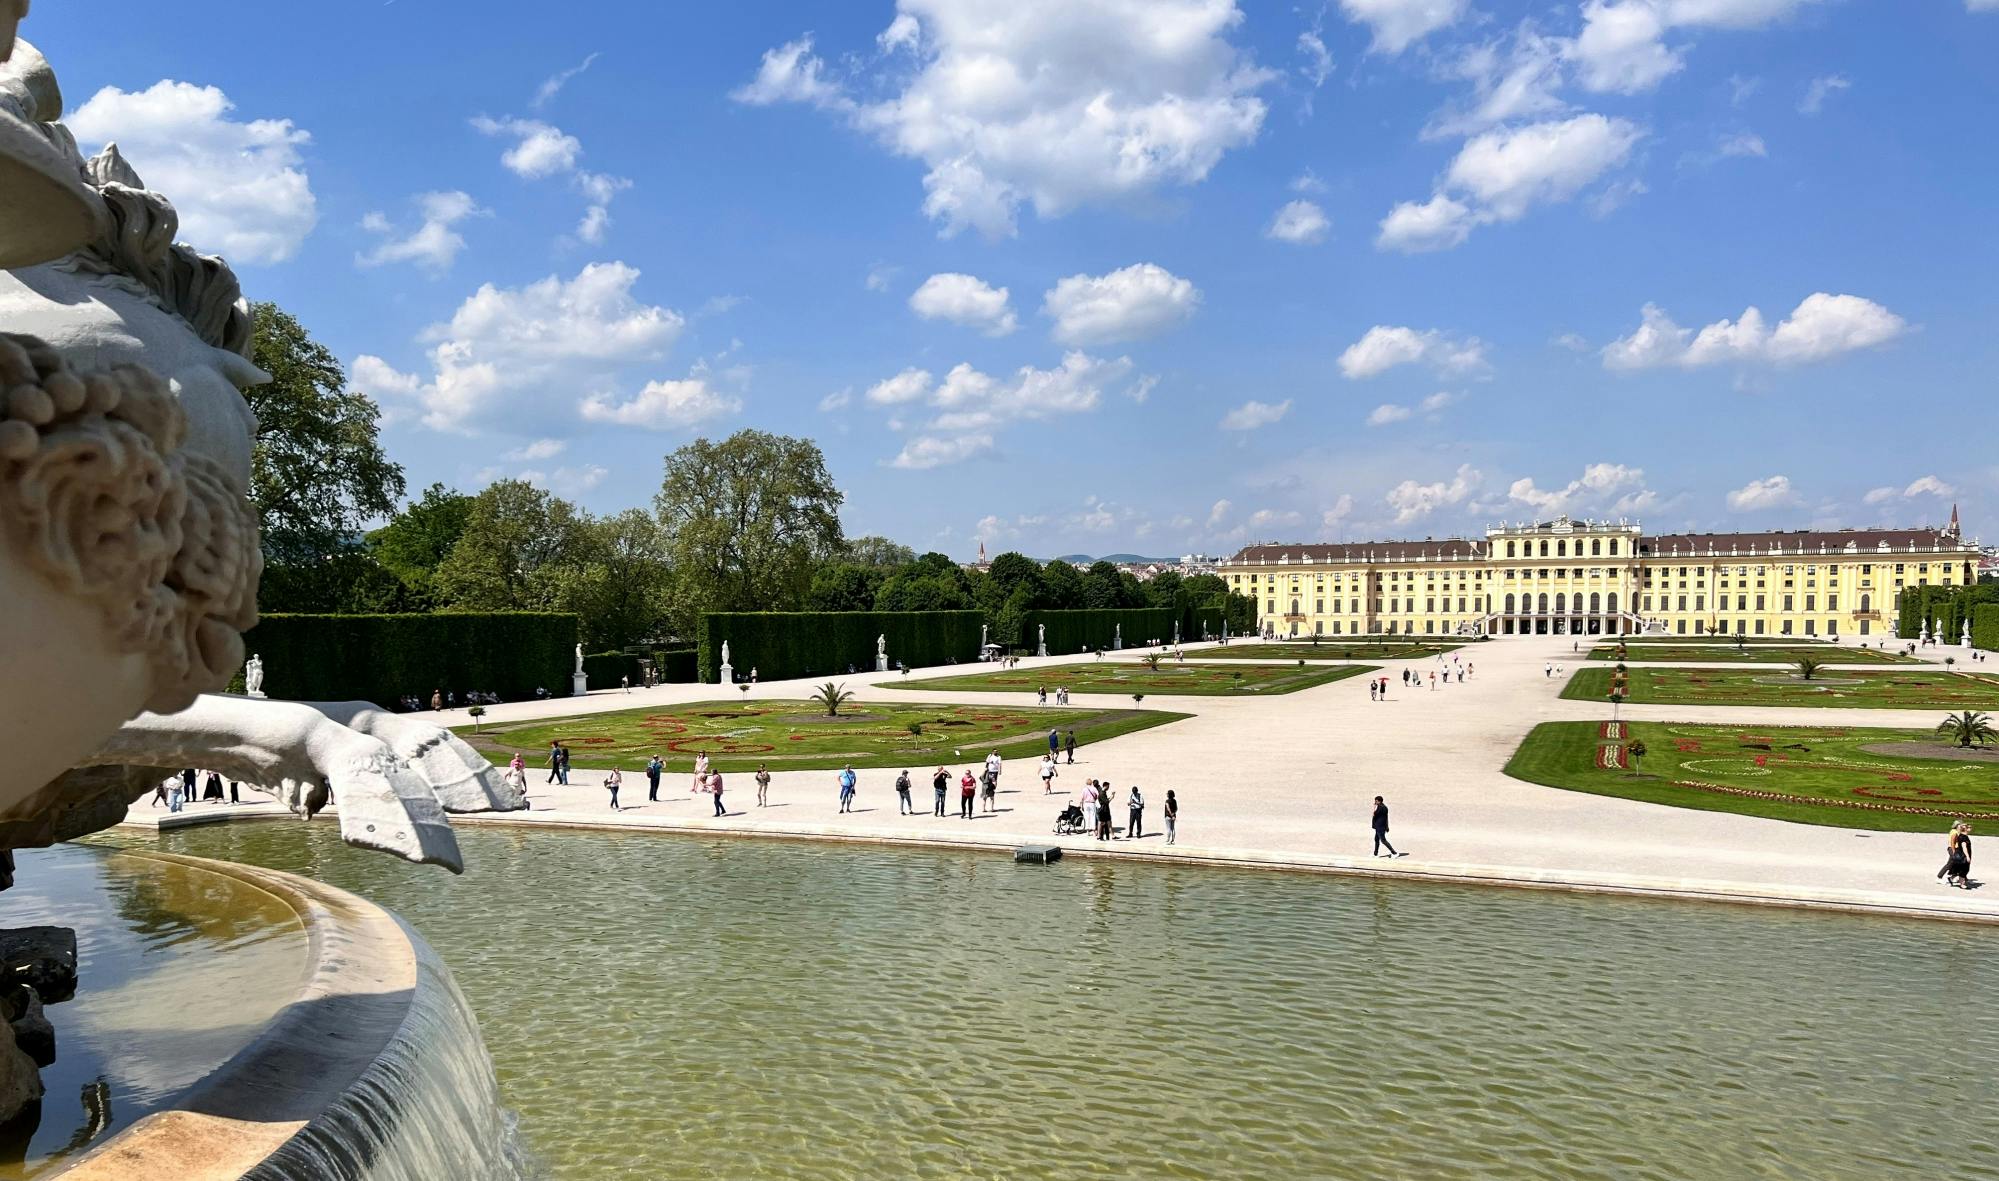 Visita guiada al palacio y jardines de Schönbrunn